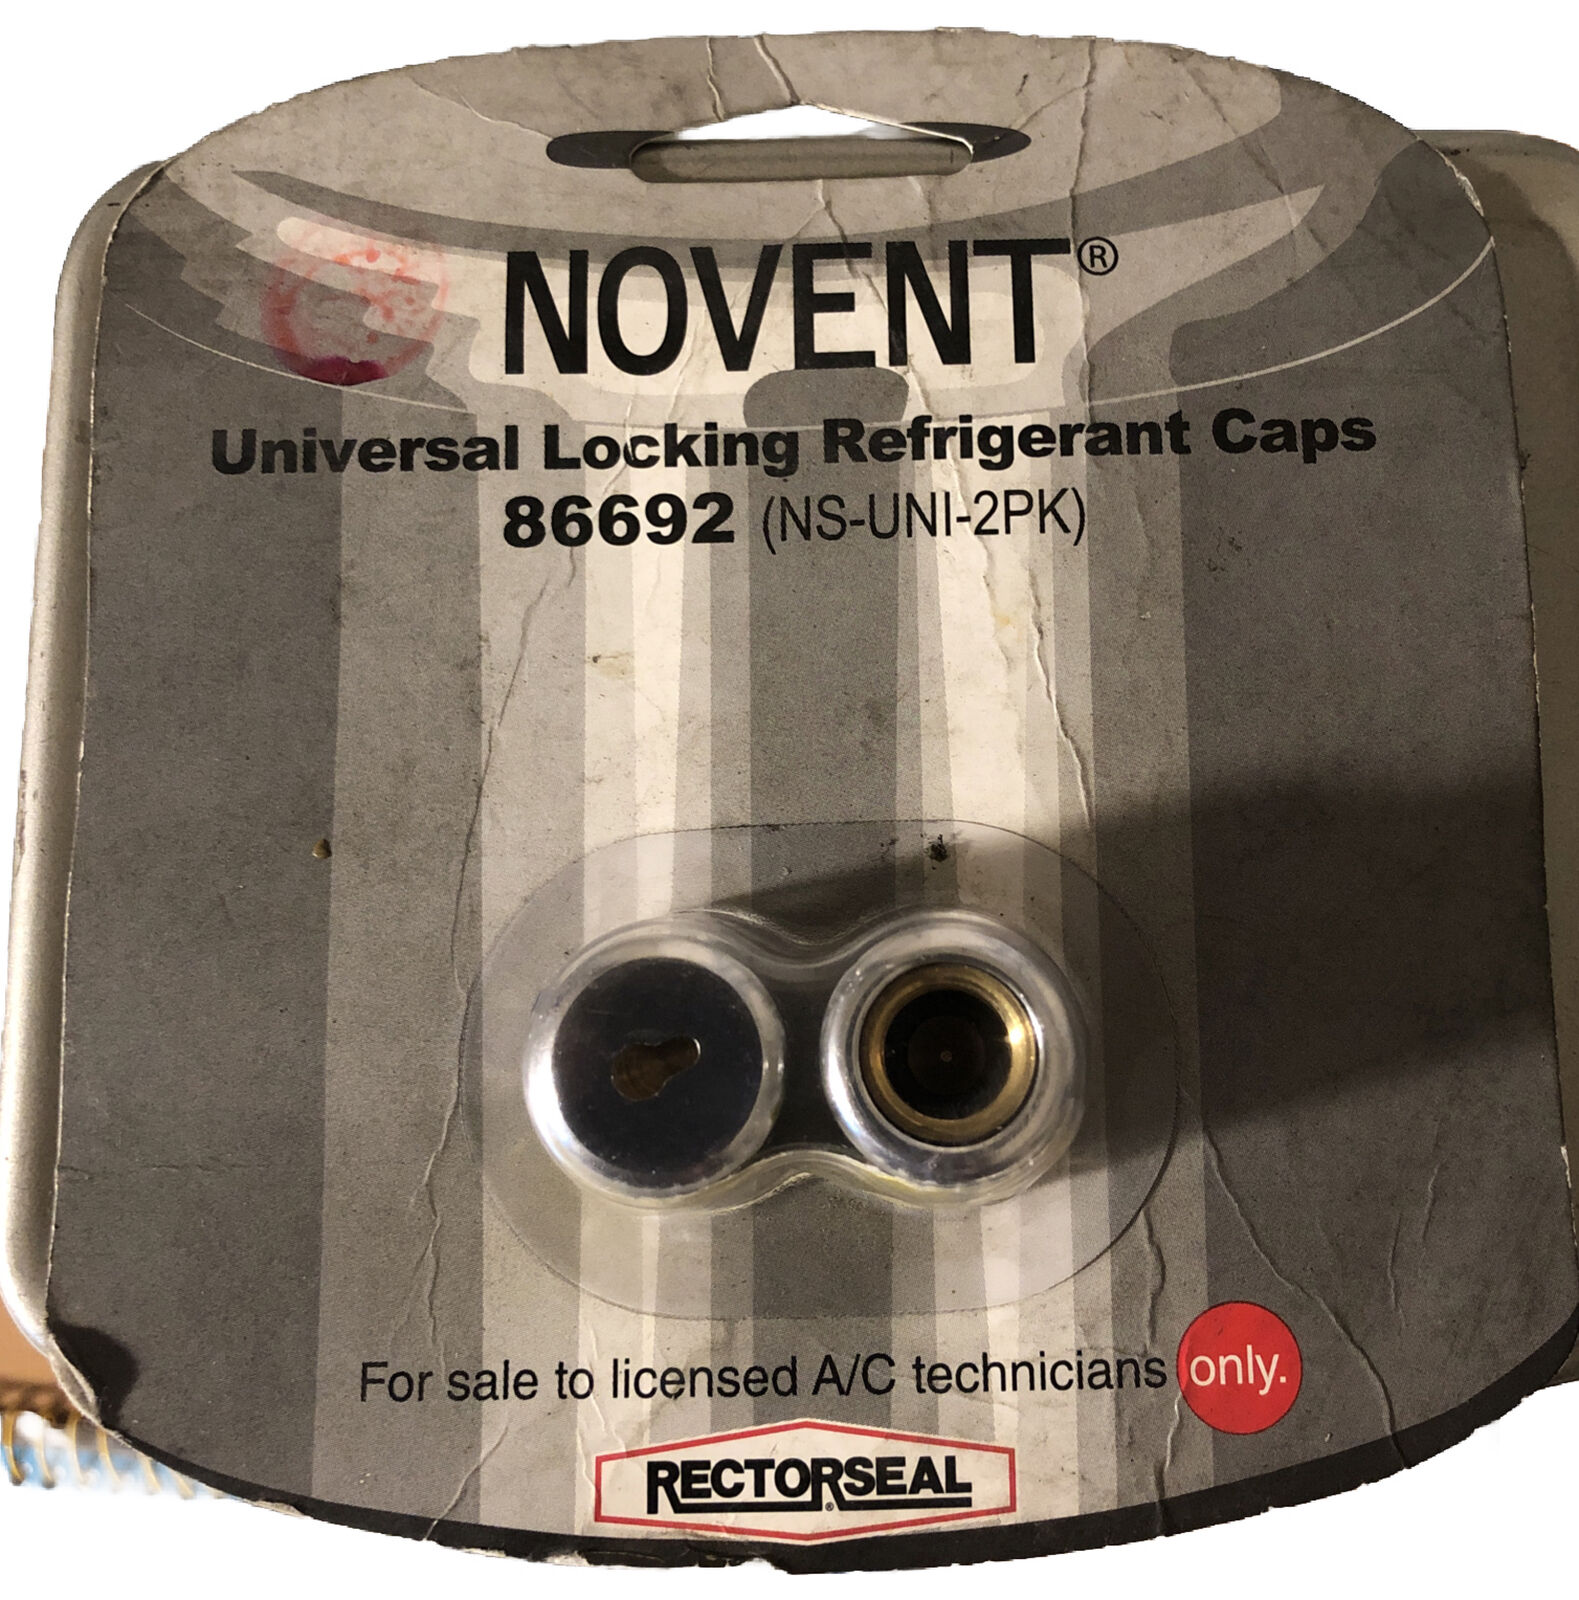 RectorSeal 86692 Novent Universal Locking Refrigerant Caps - 2 Pack ns-uni-2pk